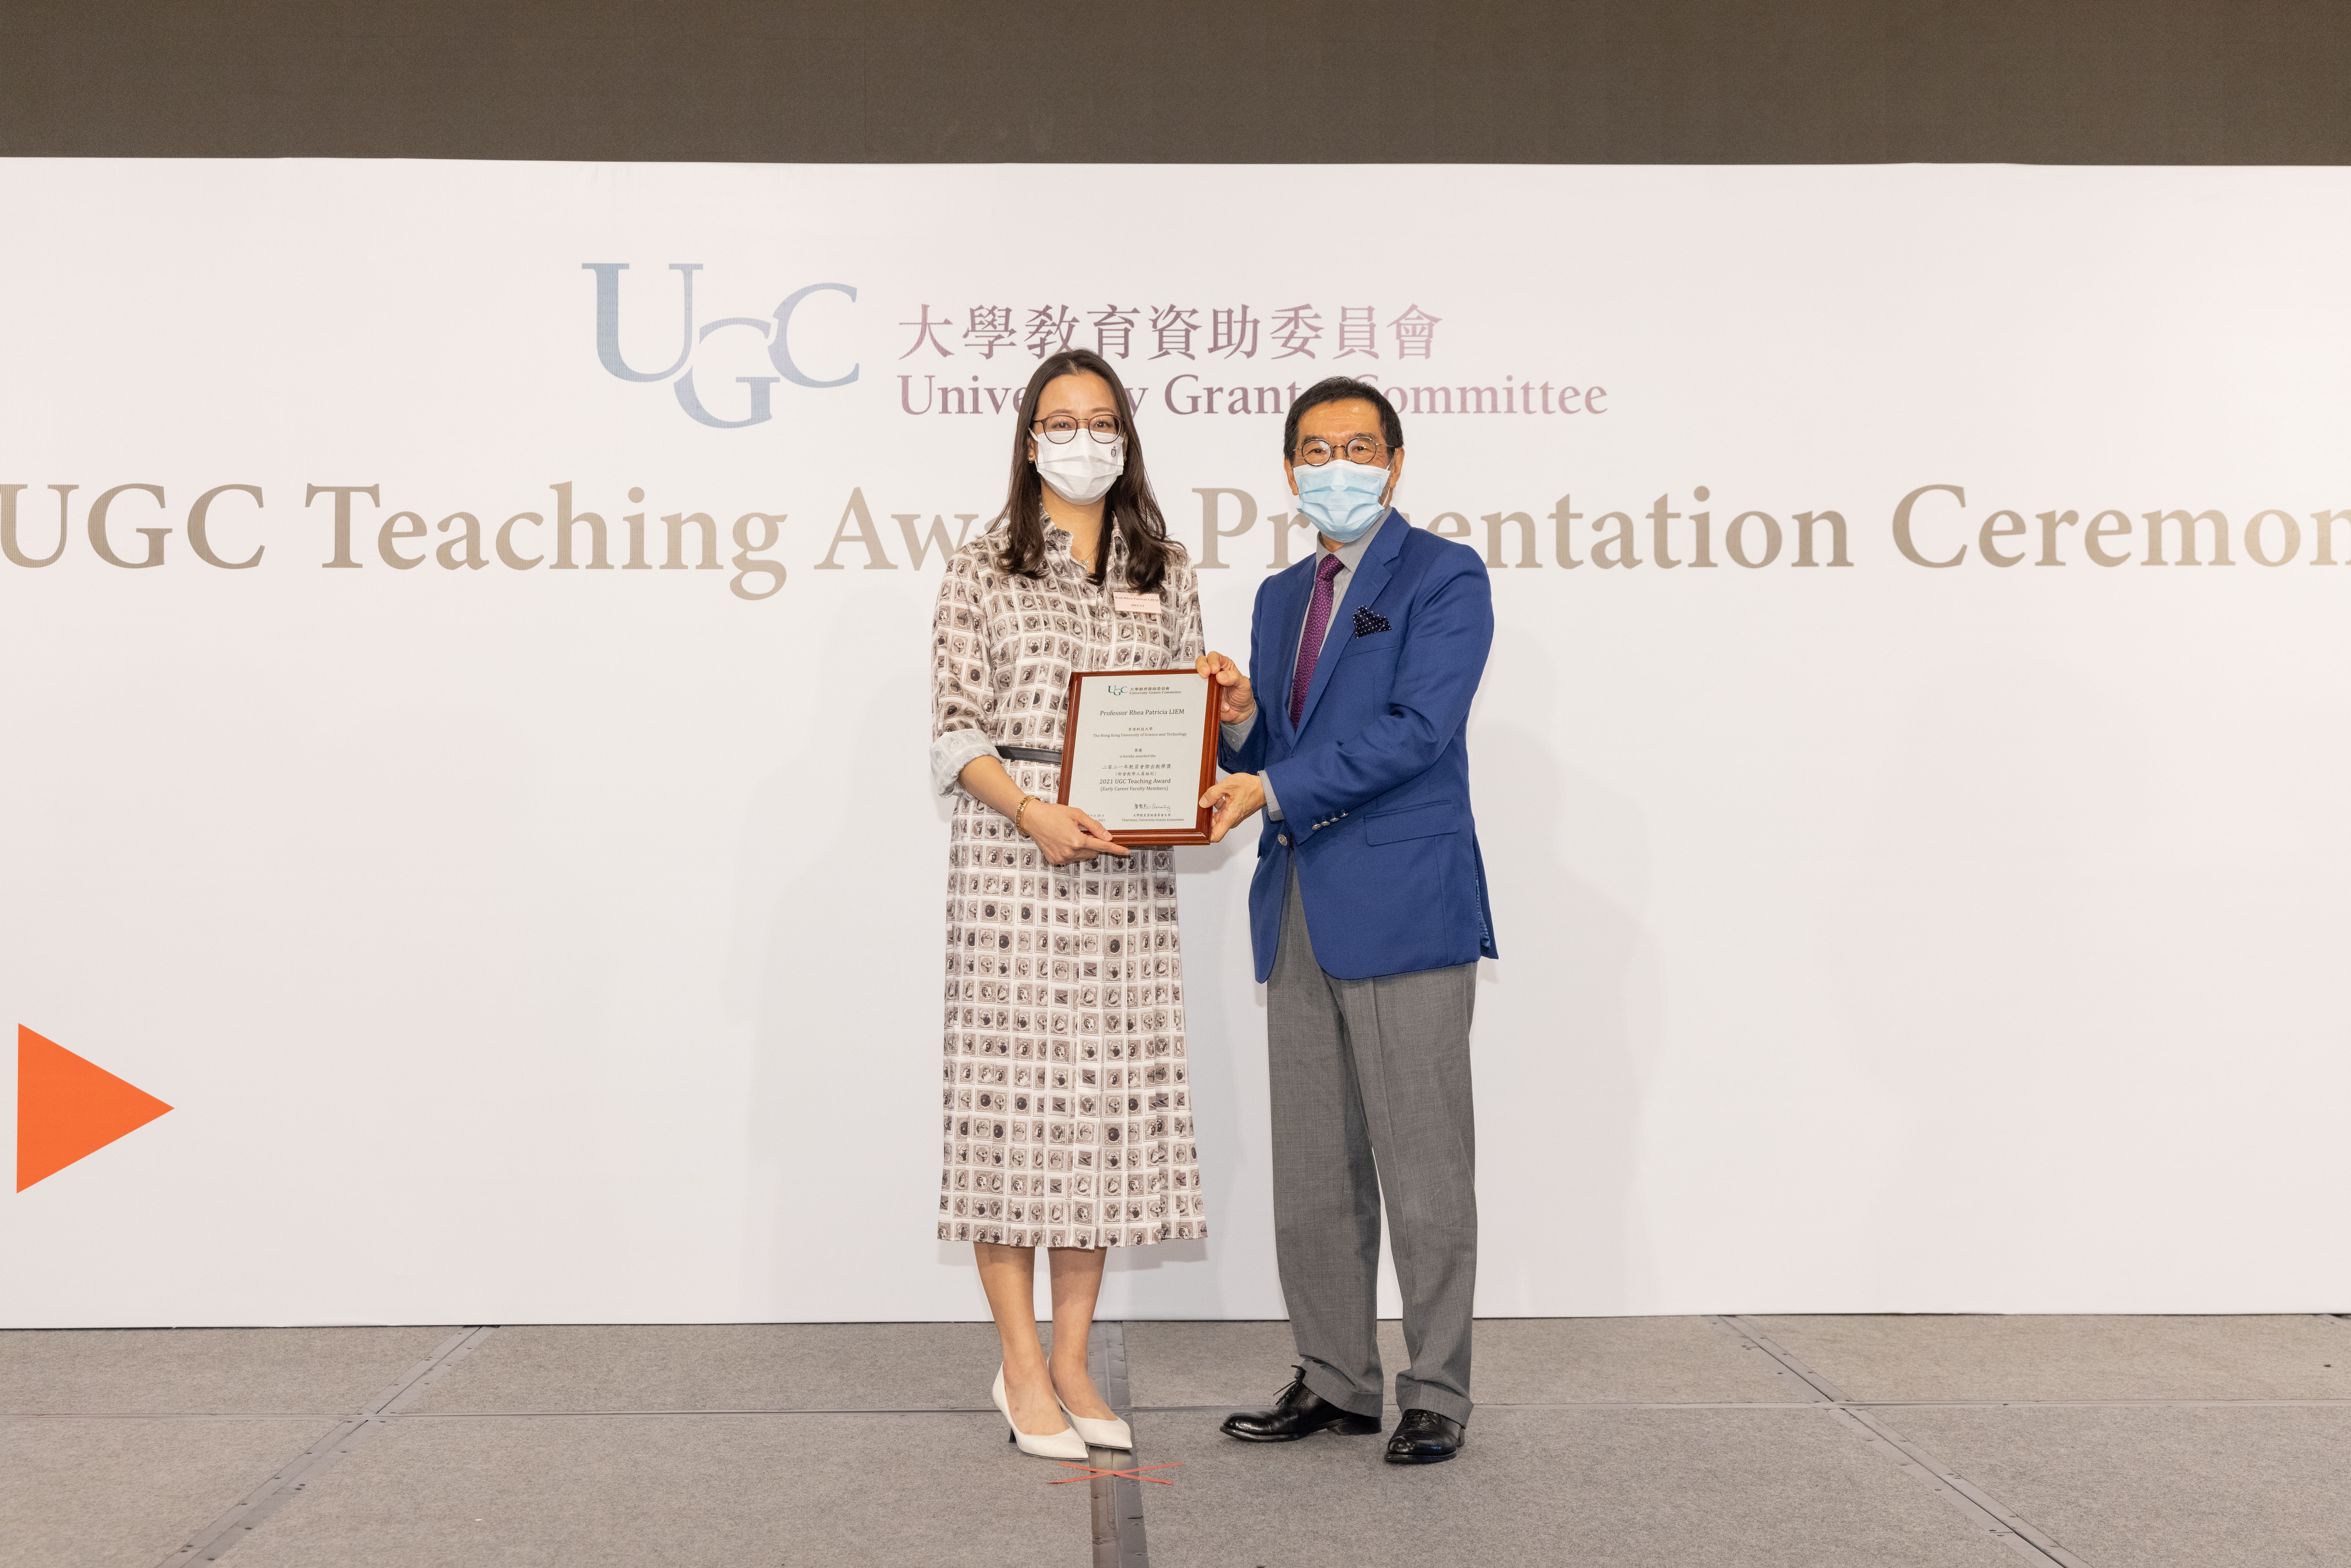 大學教育資助委員會（教資會）主席唐家成（右）頒發2021年教資會傑出教學獎（新晉教學人員組別）予Rhea LIEM教授。